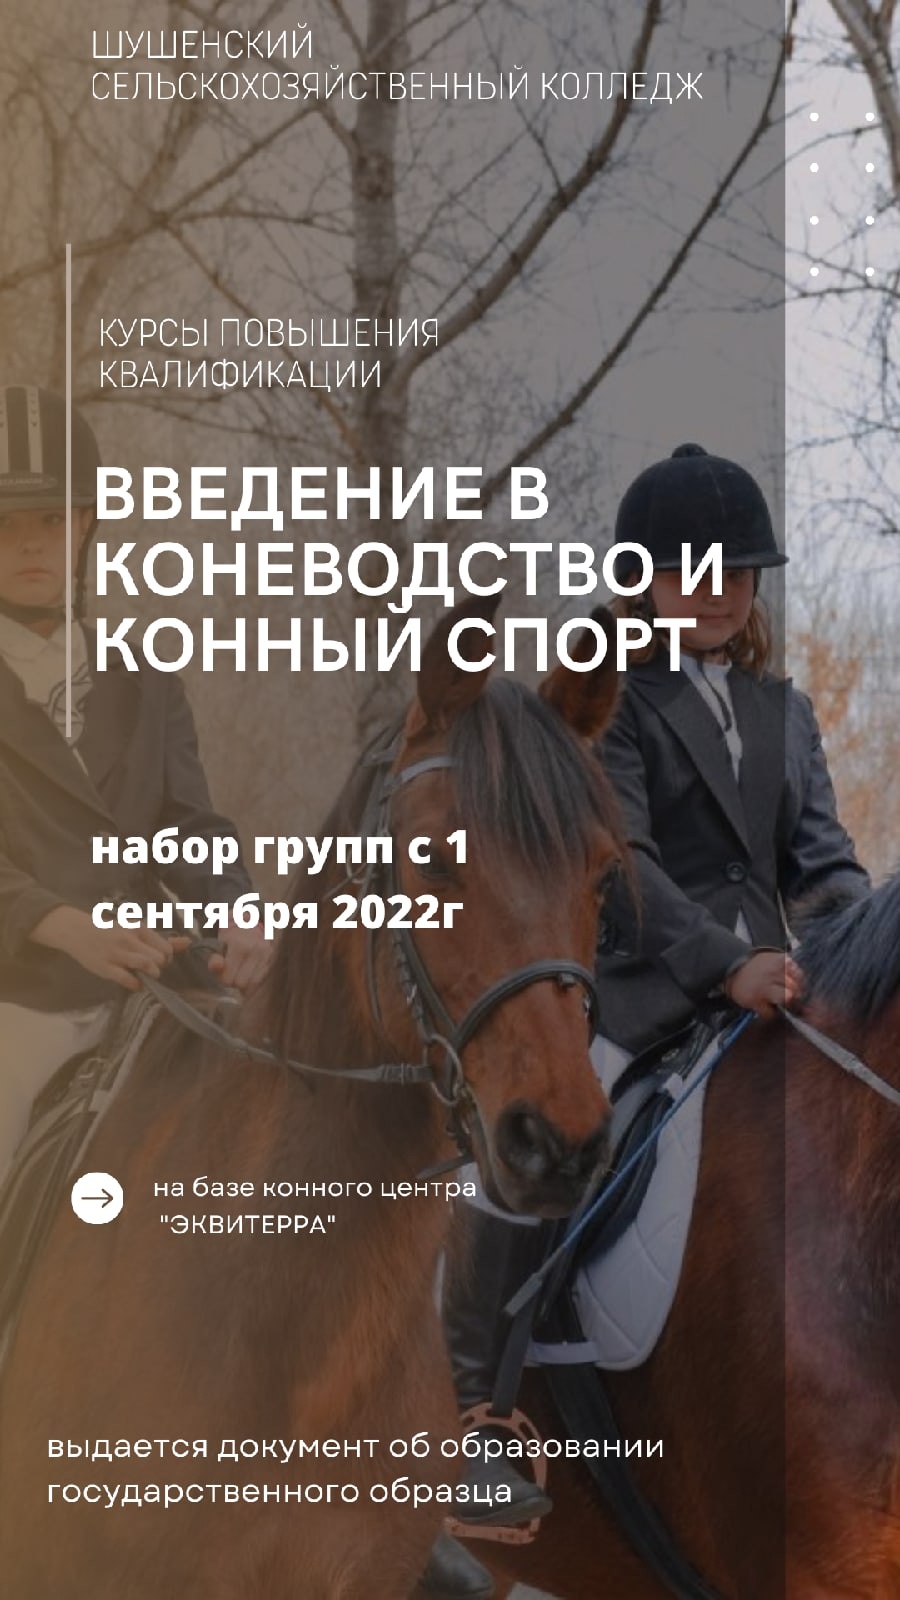 Идëт прием заявлений на образовательную программу "Введение в коневодство и конный спорт"